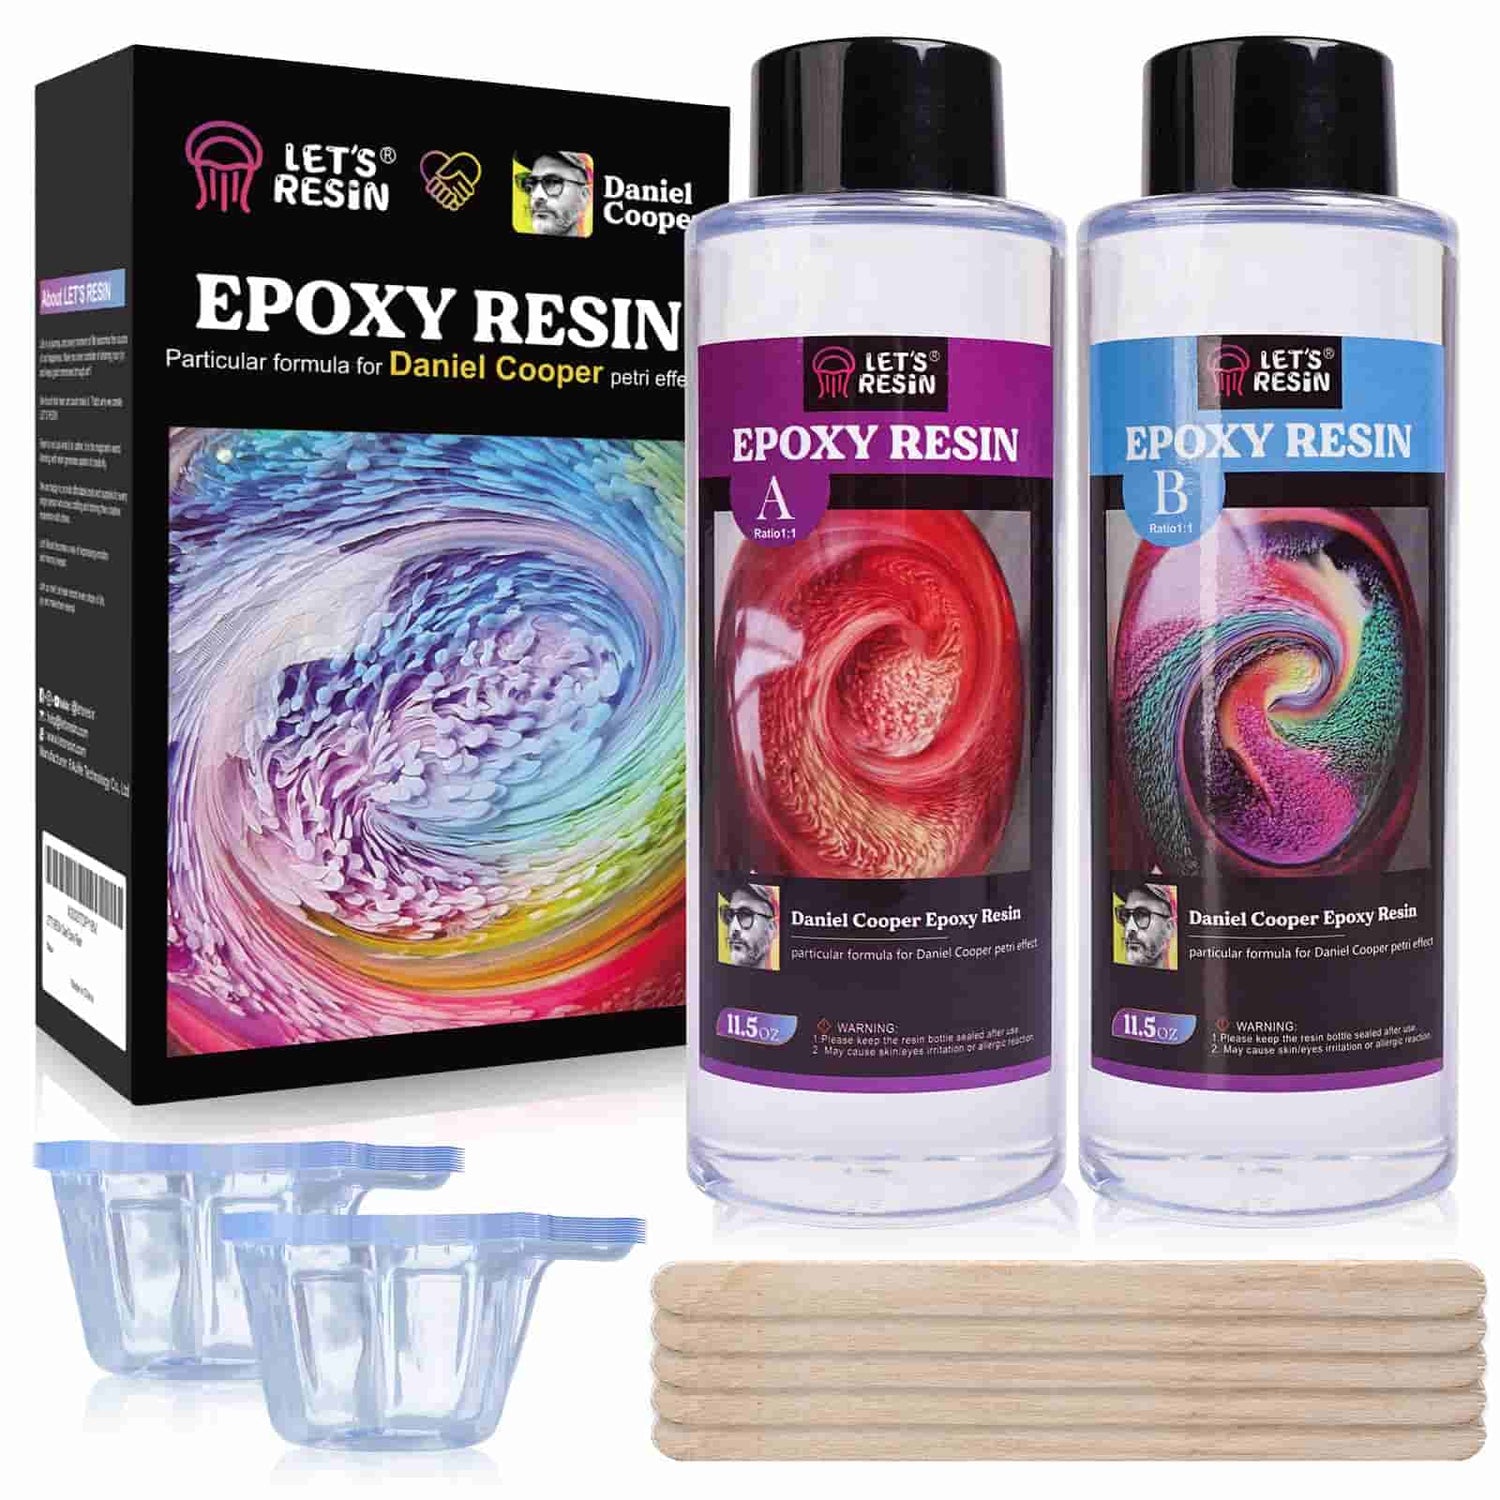  LET'S RESIN Kit de resina epoxi para principiantes